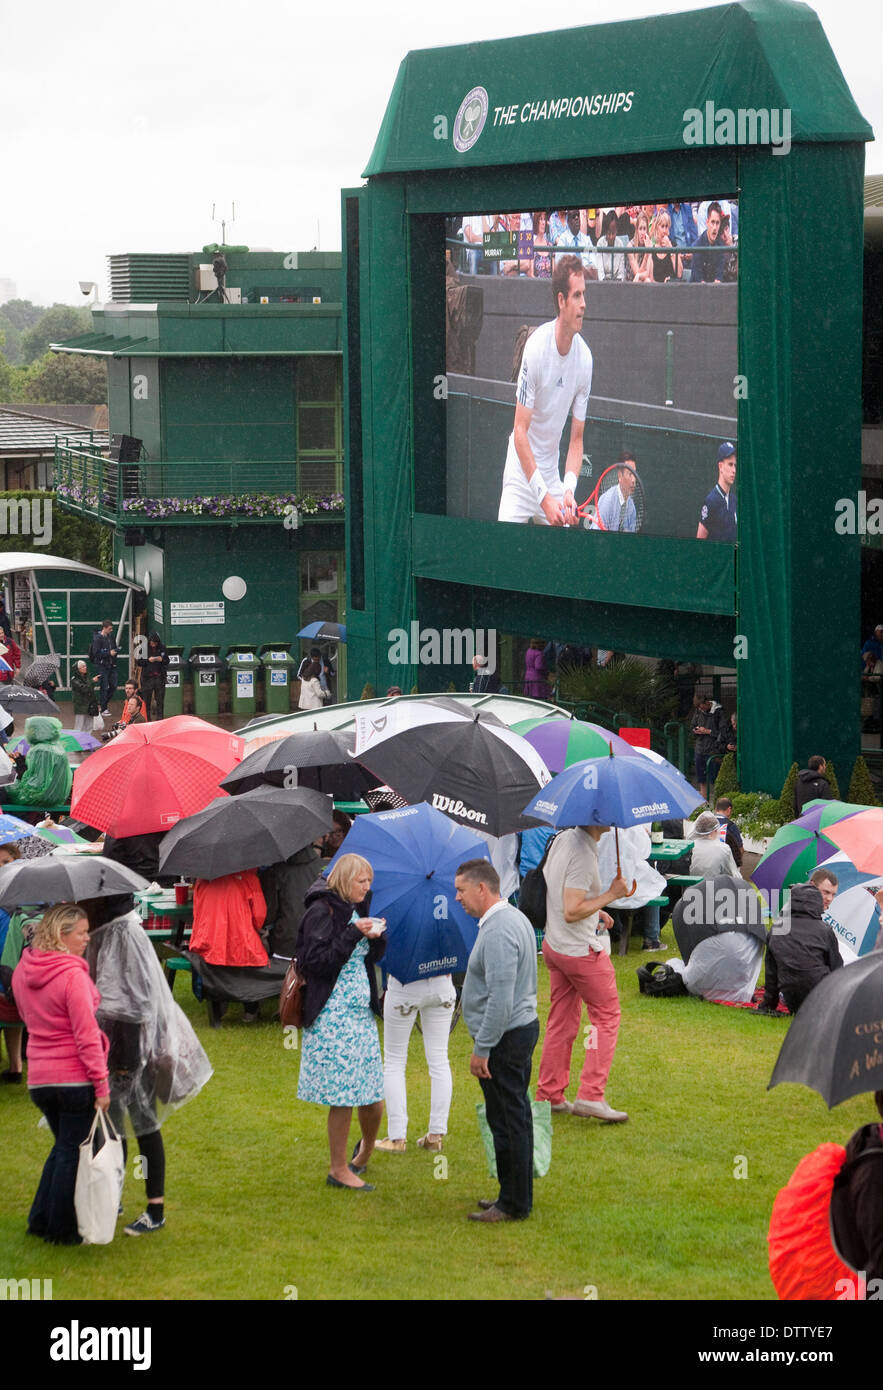 Wimbledon Tennis Menschenmenge auf Murray mount im Hintergrund einen TV-Bildschirm zeigt Andy Murray Vordergrund open Wimbledon Regenschirm Stockfotografie